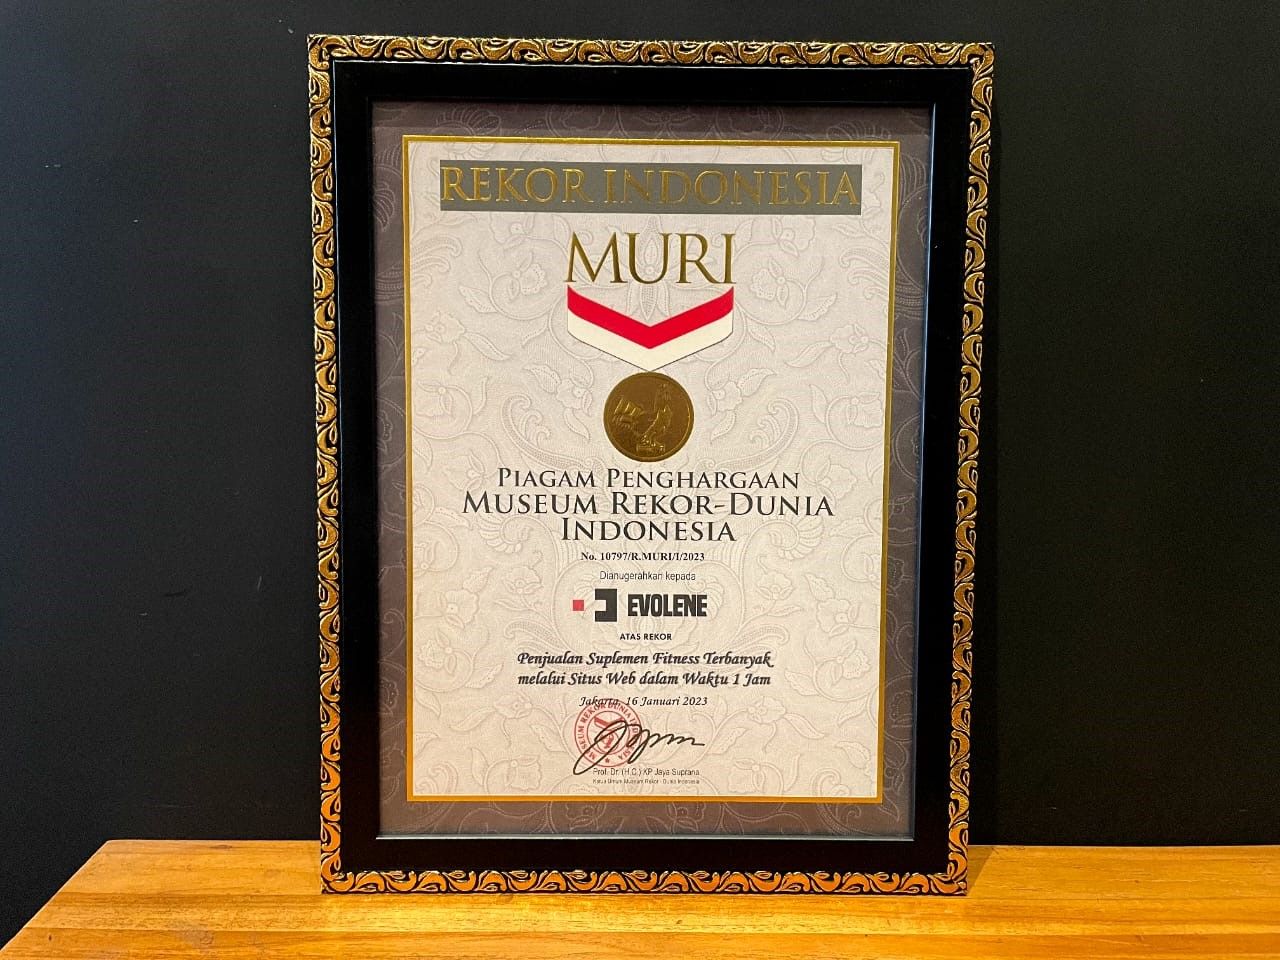 Penghargaan Museum Rekor Dunia Indonesia (MURI) yang diberikan kepada Evolene.